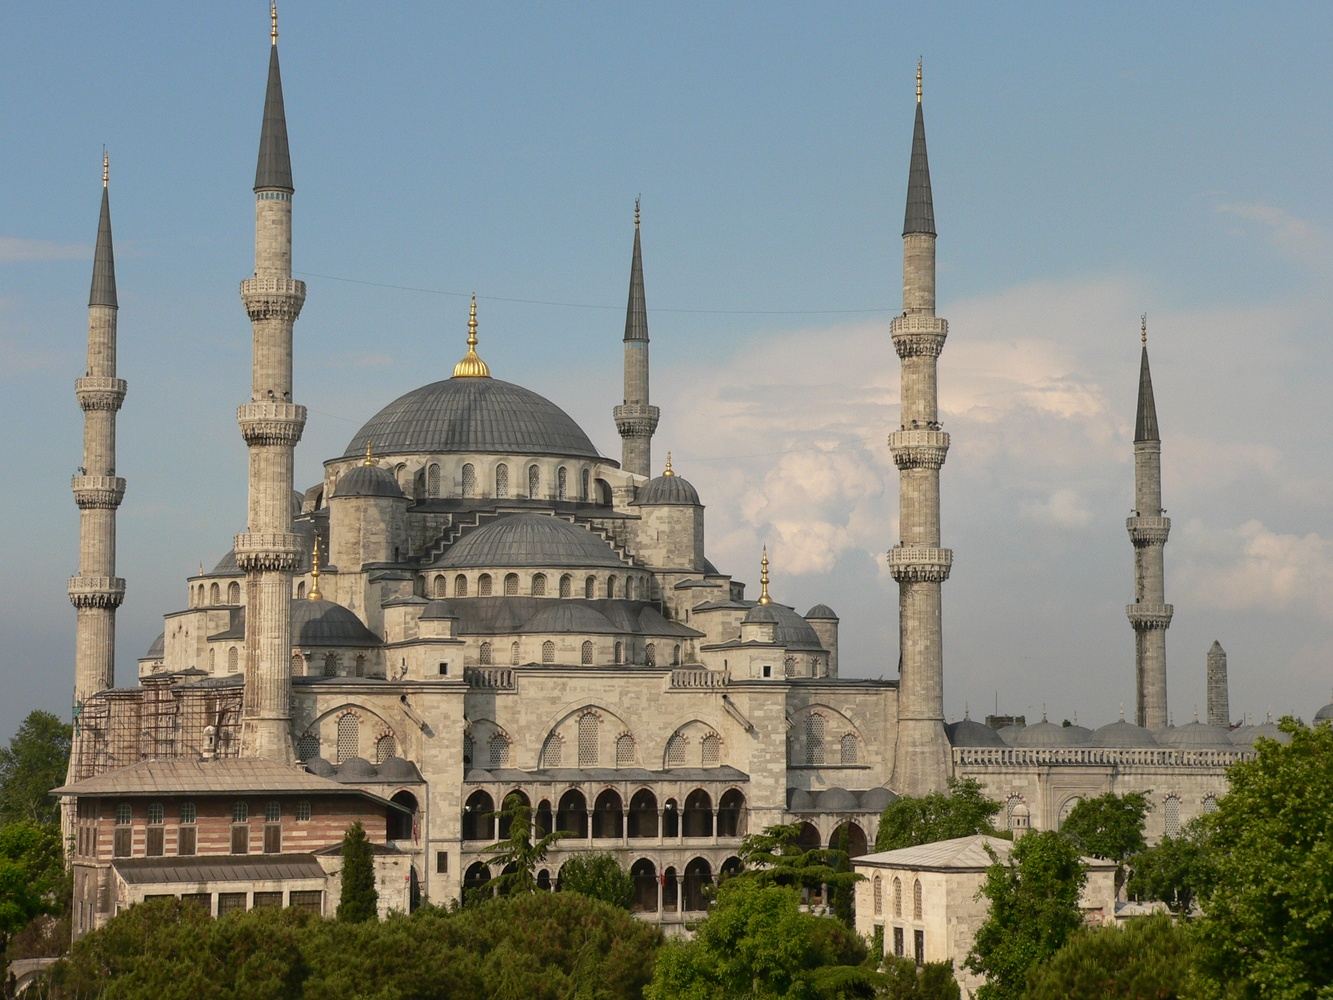 Türkiye: Istanbul, Cappadocia, and Antalya